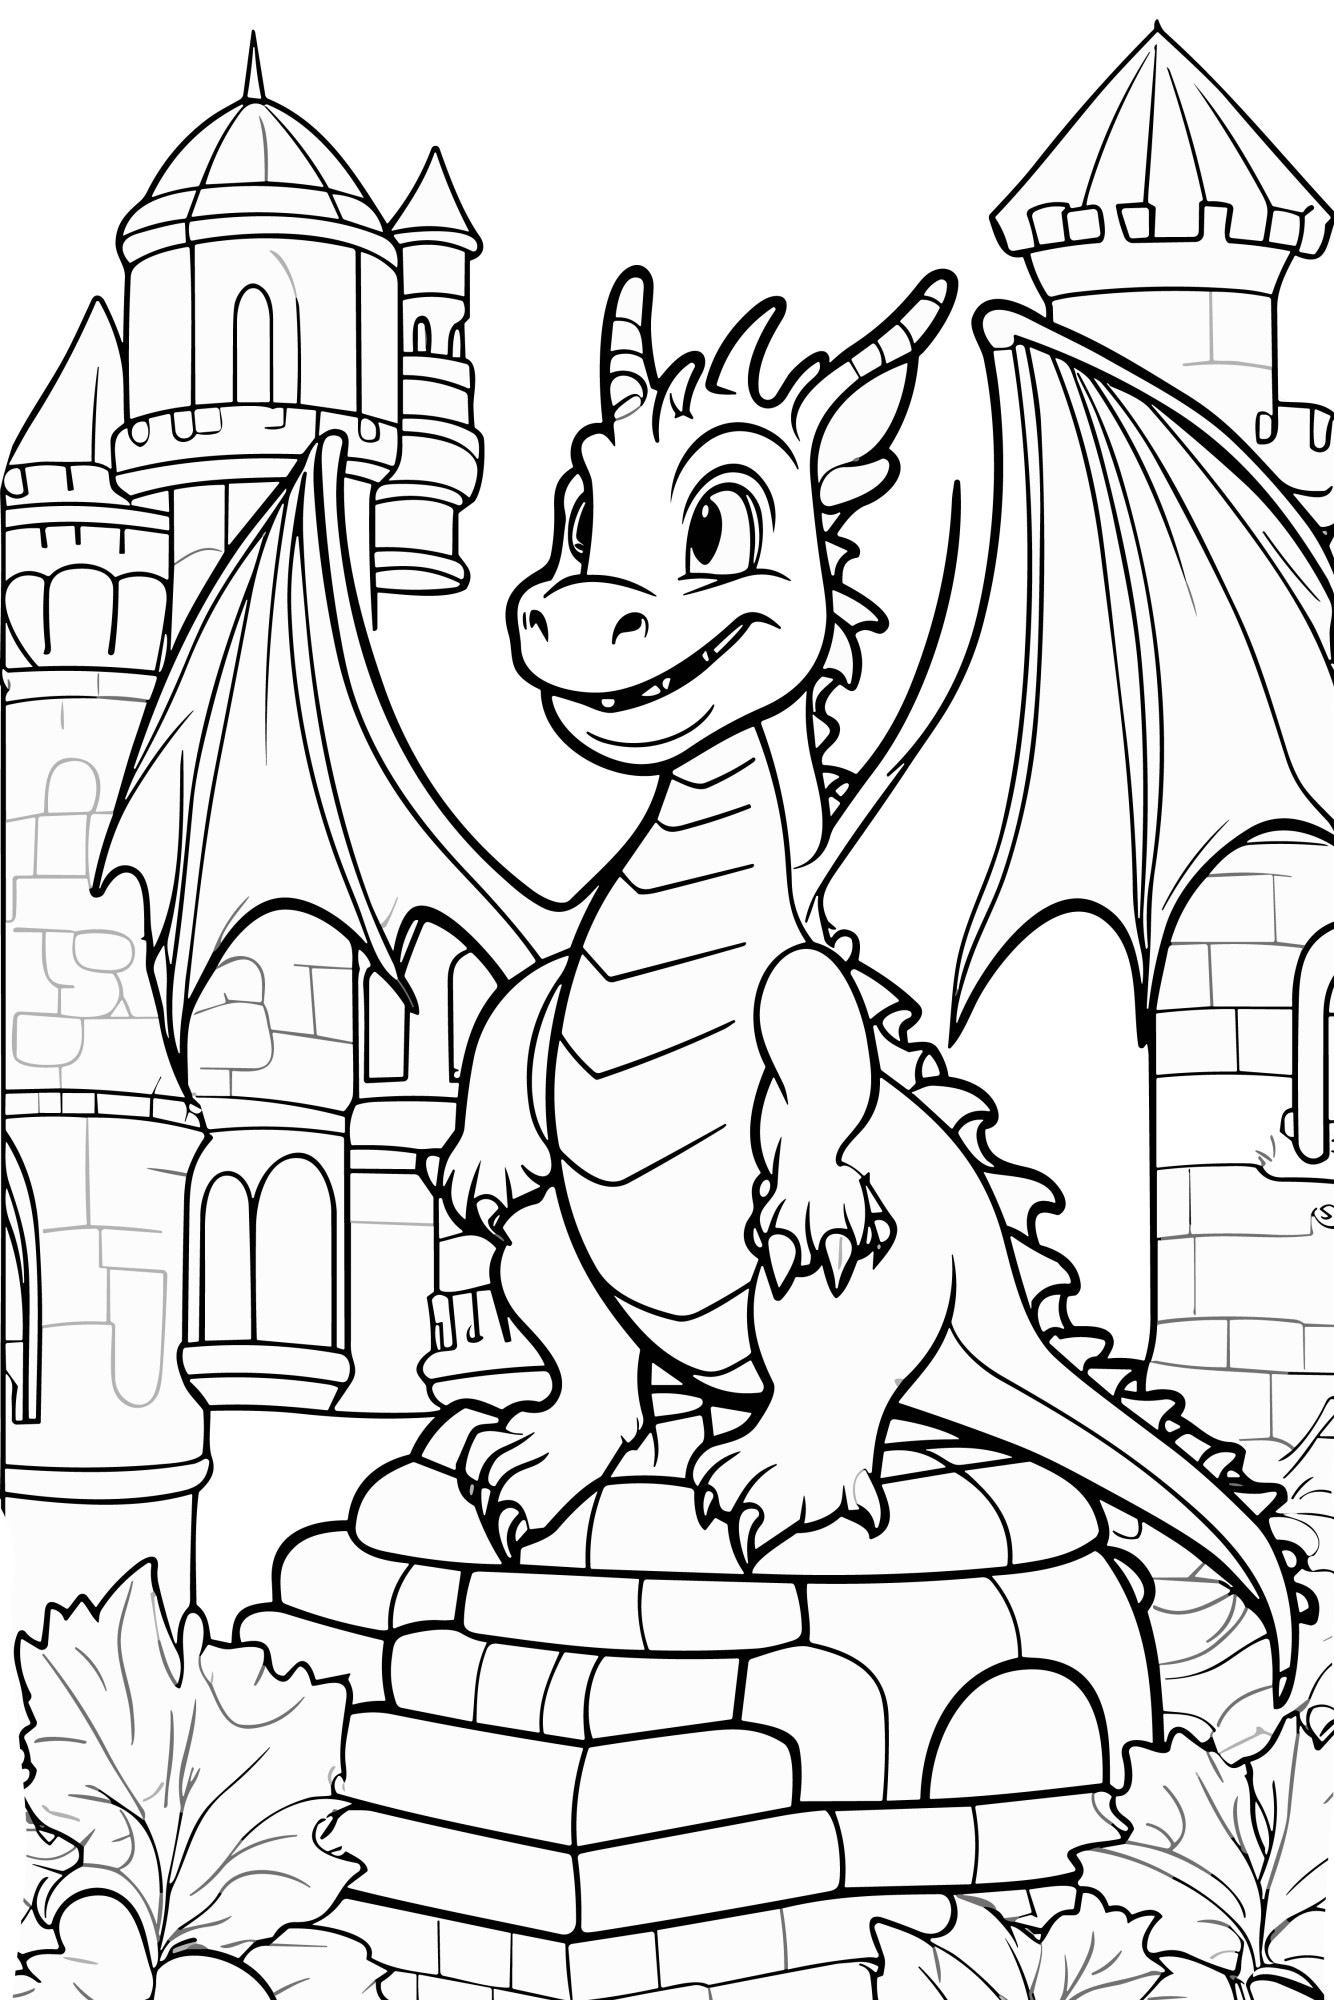 Раскраска для детей: сказочный дракон сидит у замка